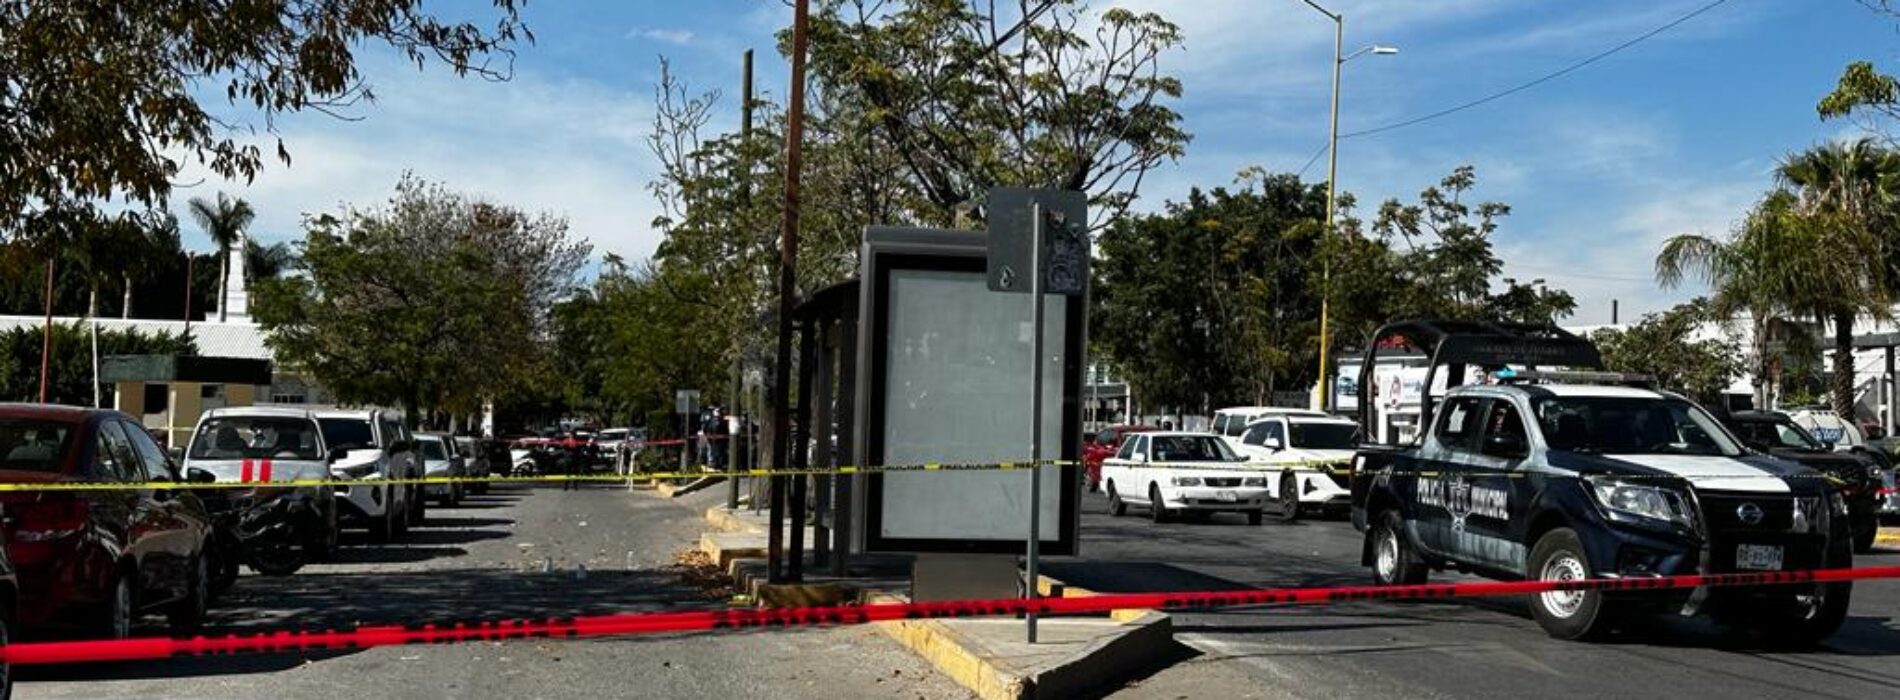 Violencia imparable en Oaxaca; atacan a comandante de la SSP al intentar asaltarlo